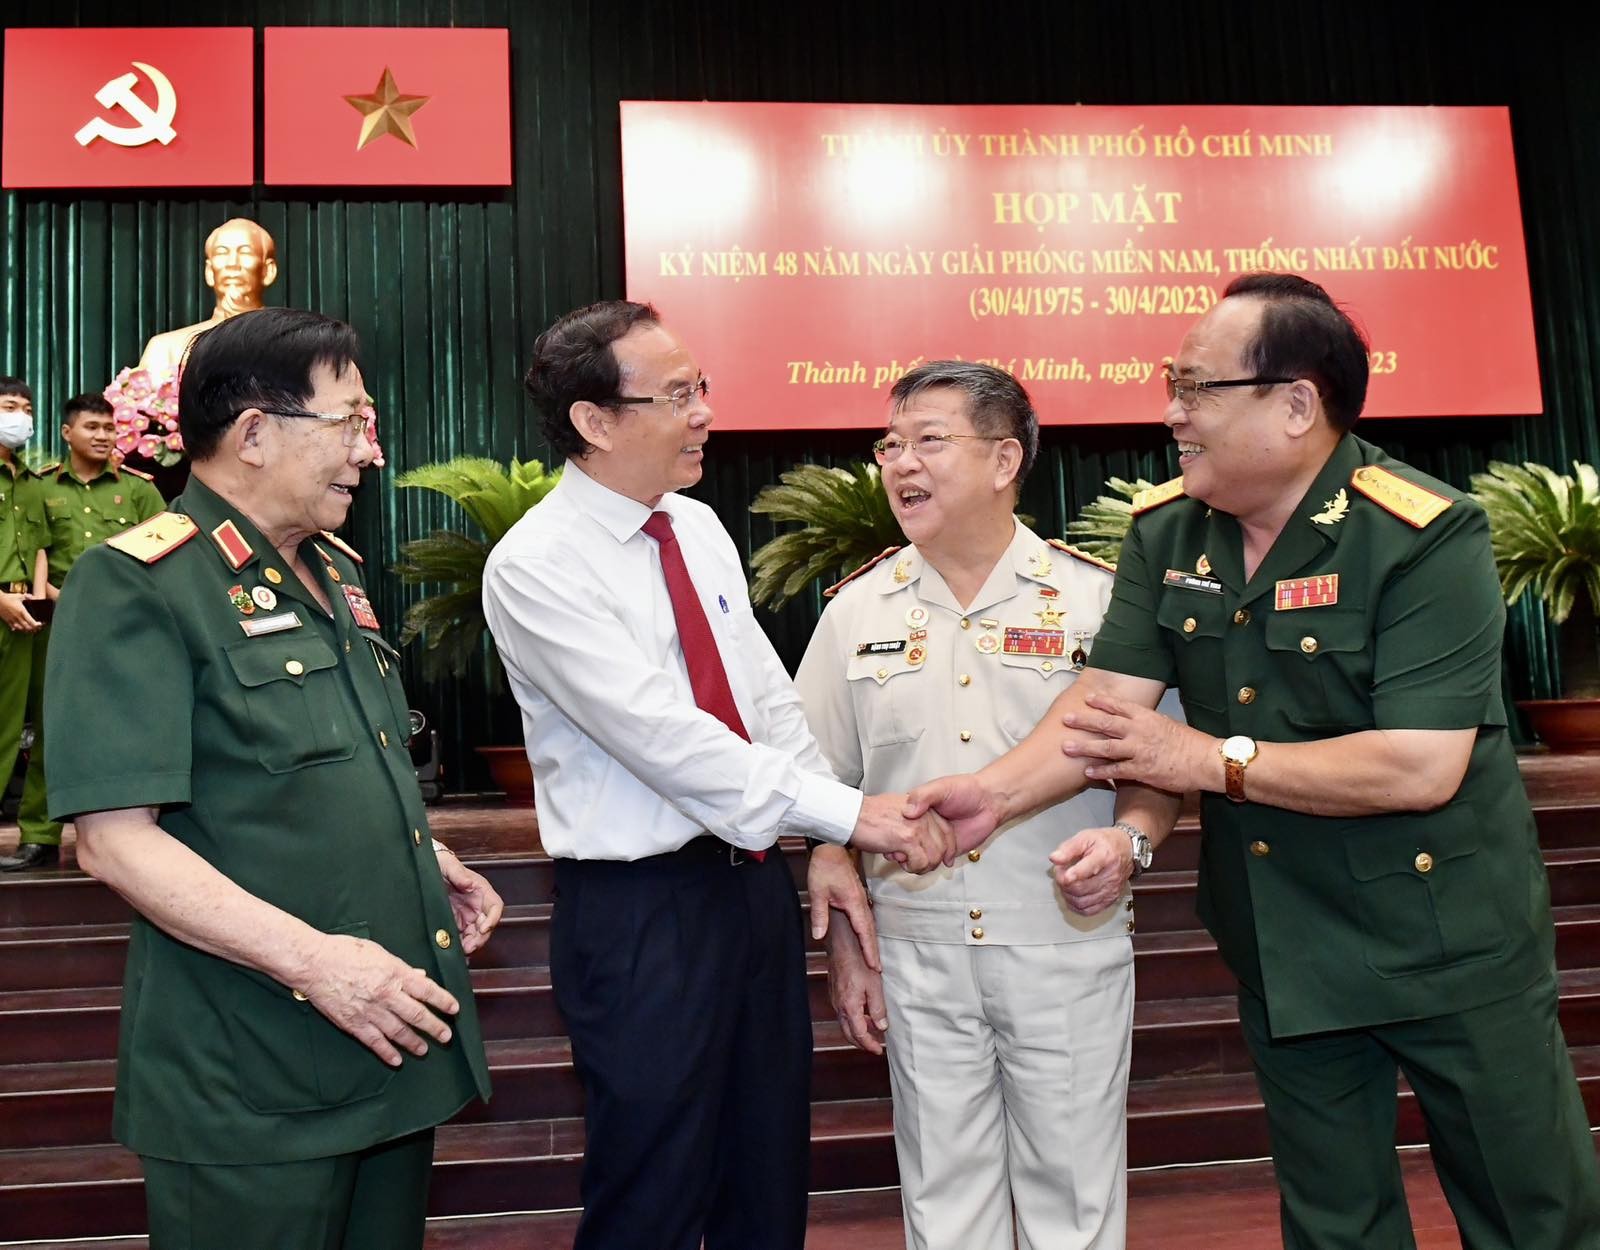 Đồng chí Nguyễn Văn Nên, Bí thư Thành ủy TPHCM trao đổi với các tướng lĩnh tại buổi họp mặt (Ảnh: VIỆT DŨNG).